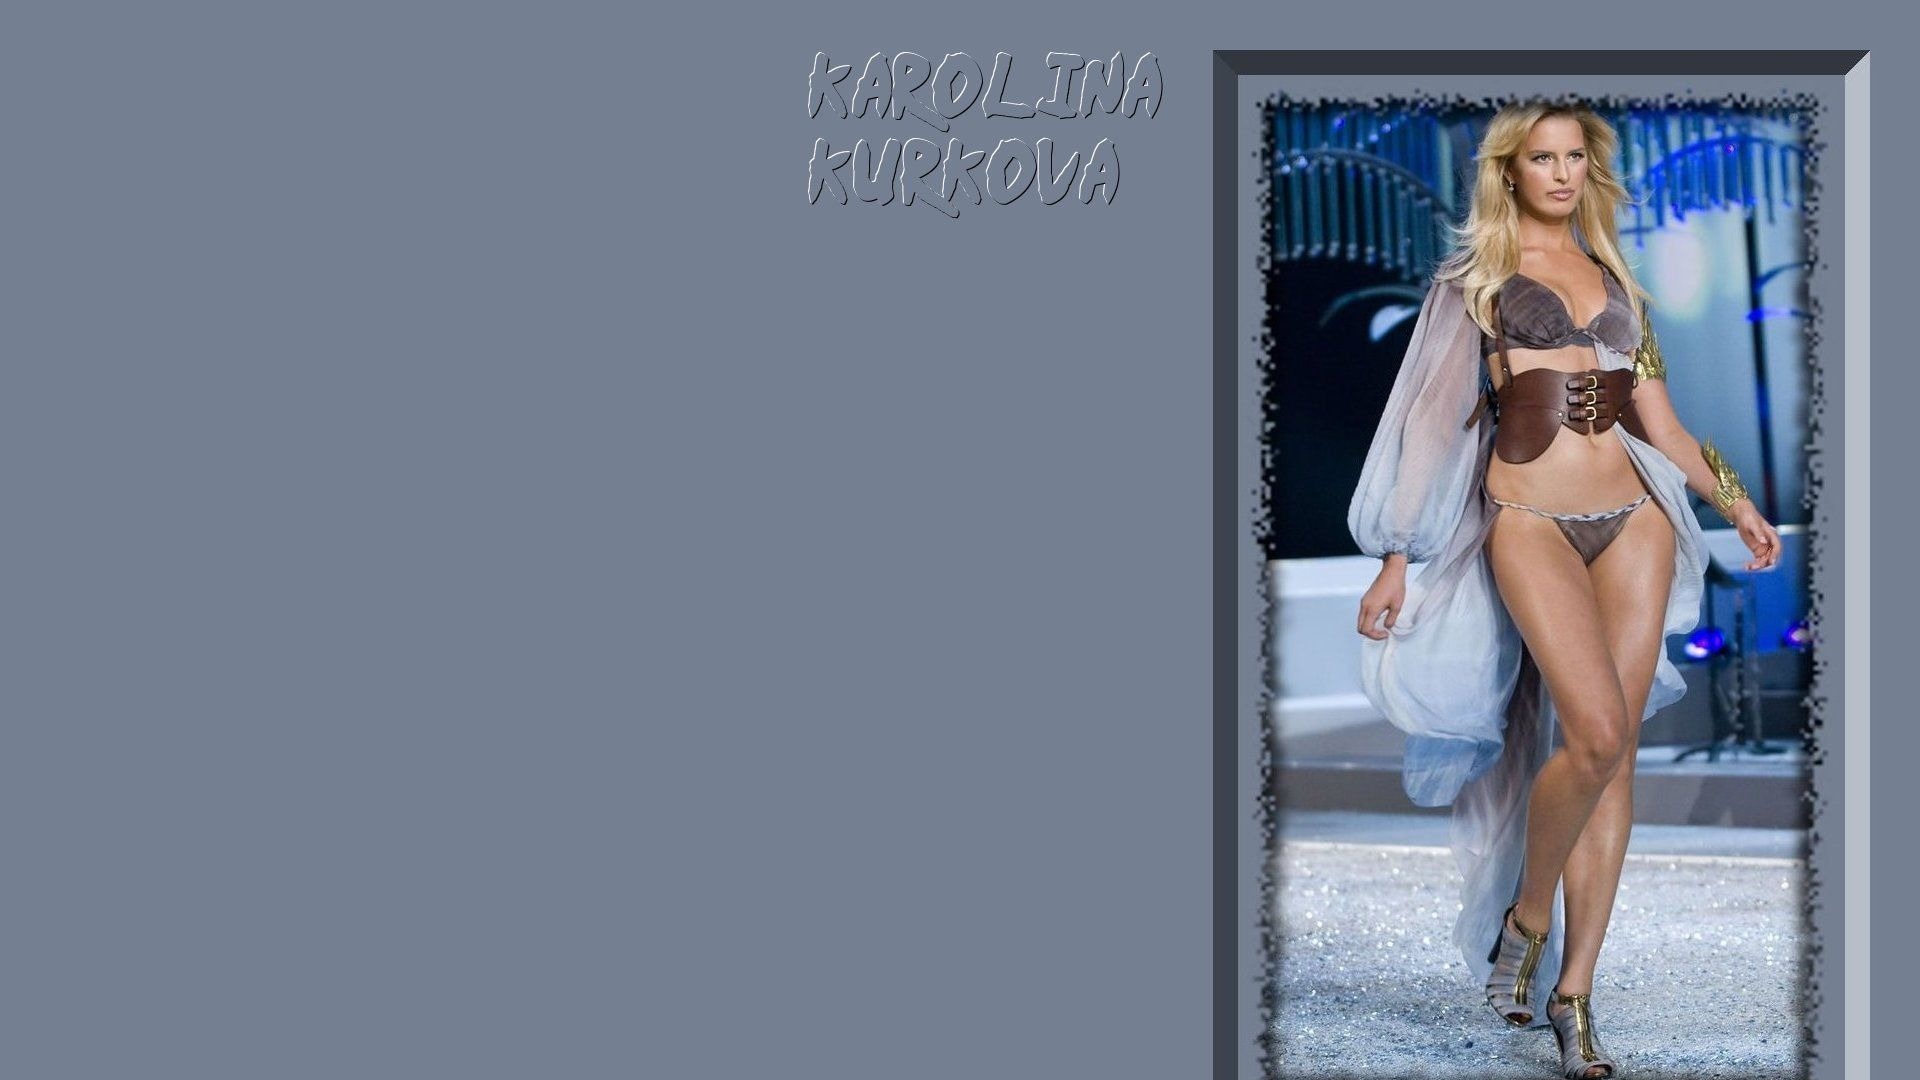 Karolina Kurkova #008 - 1920x1080 Wallpapers Pictures Photos Images